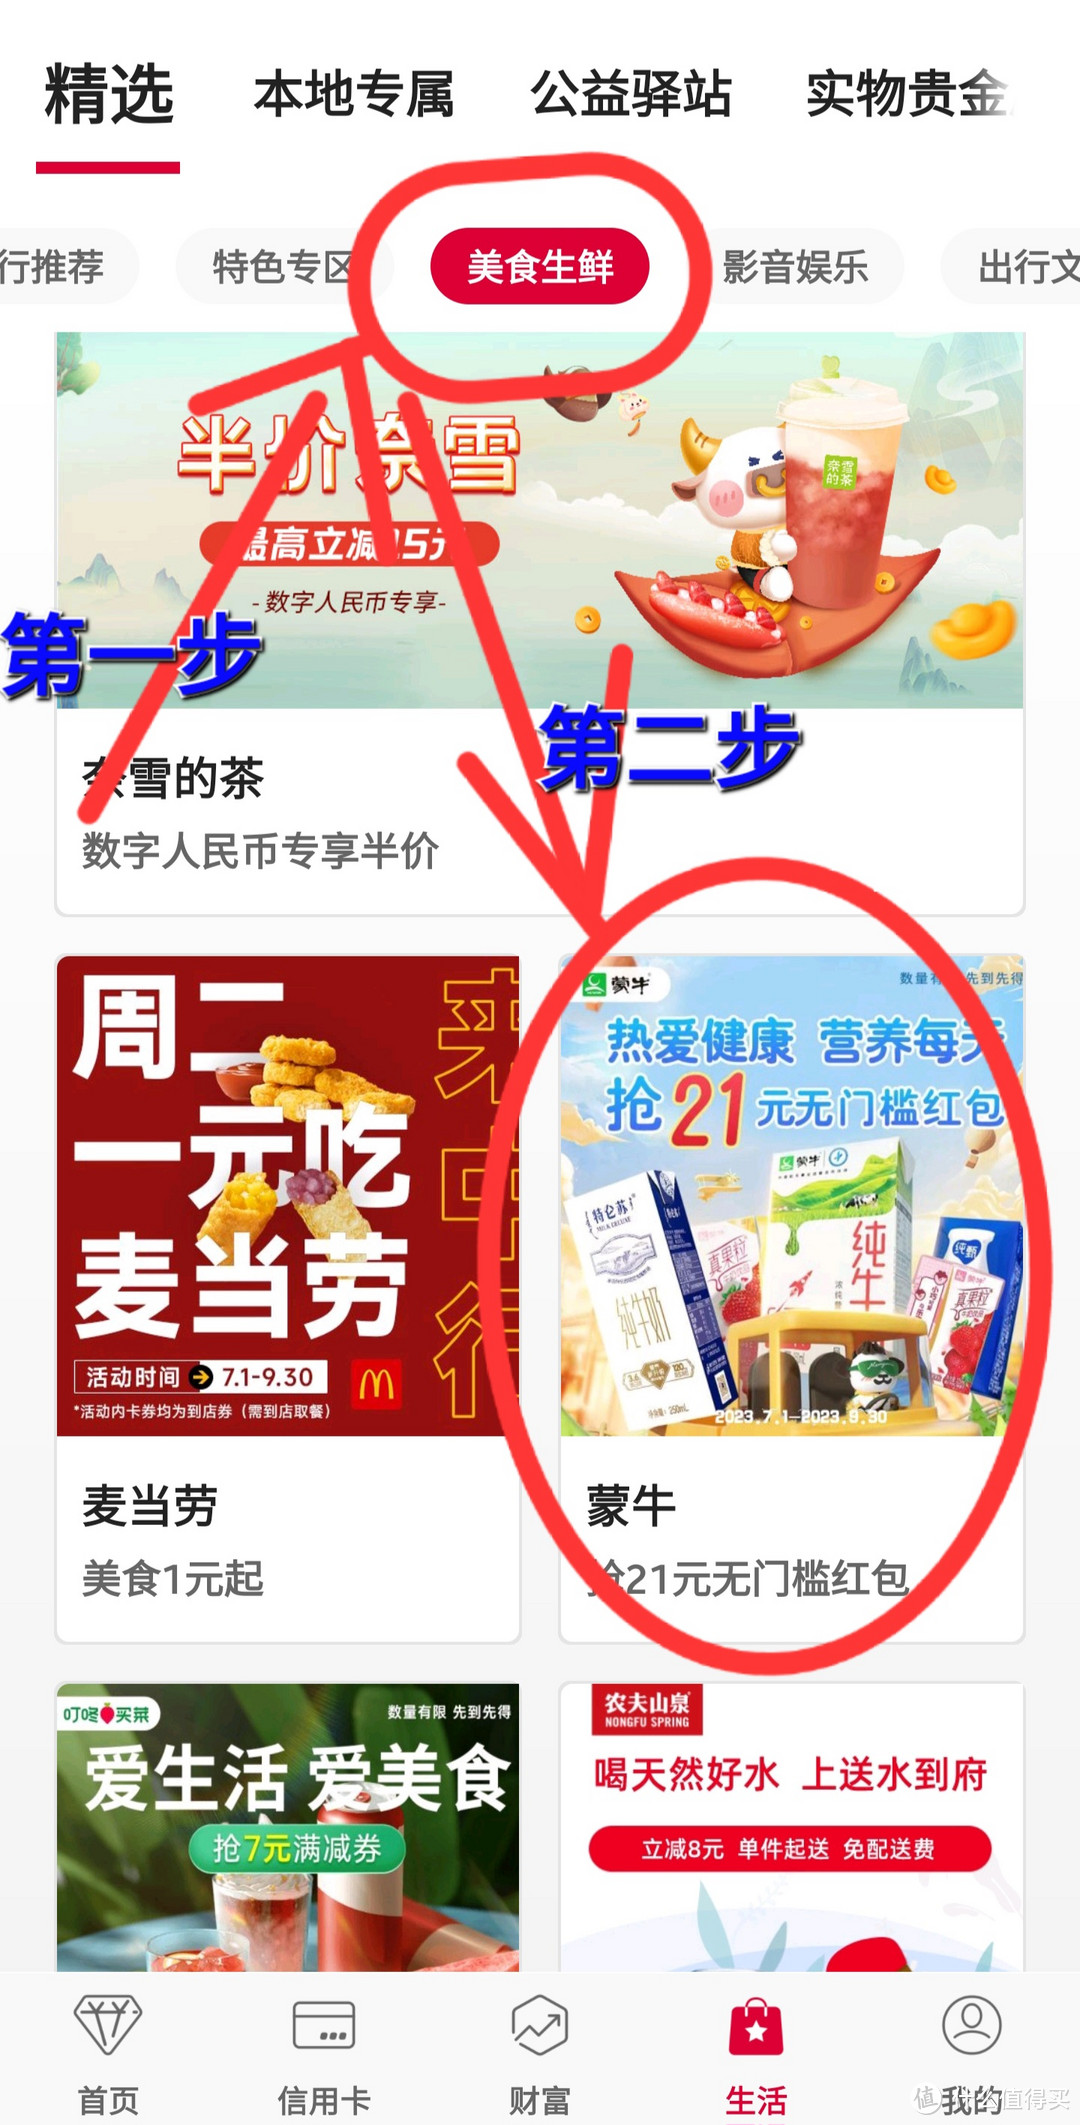 中国银行免费领取21元无门槛红包，购买1箱牛奶仅需要1.9元。限量领取，赶紧来抢牛奶